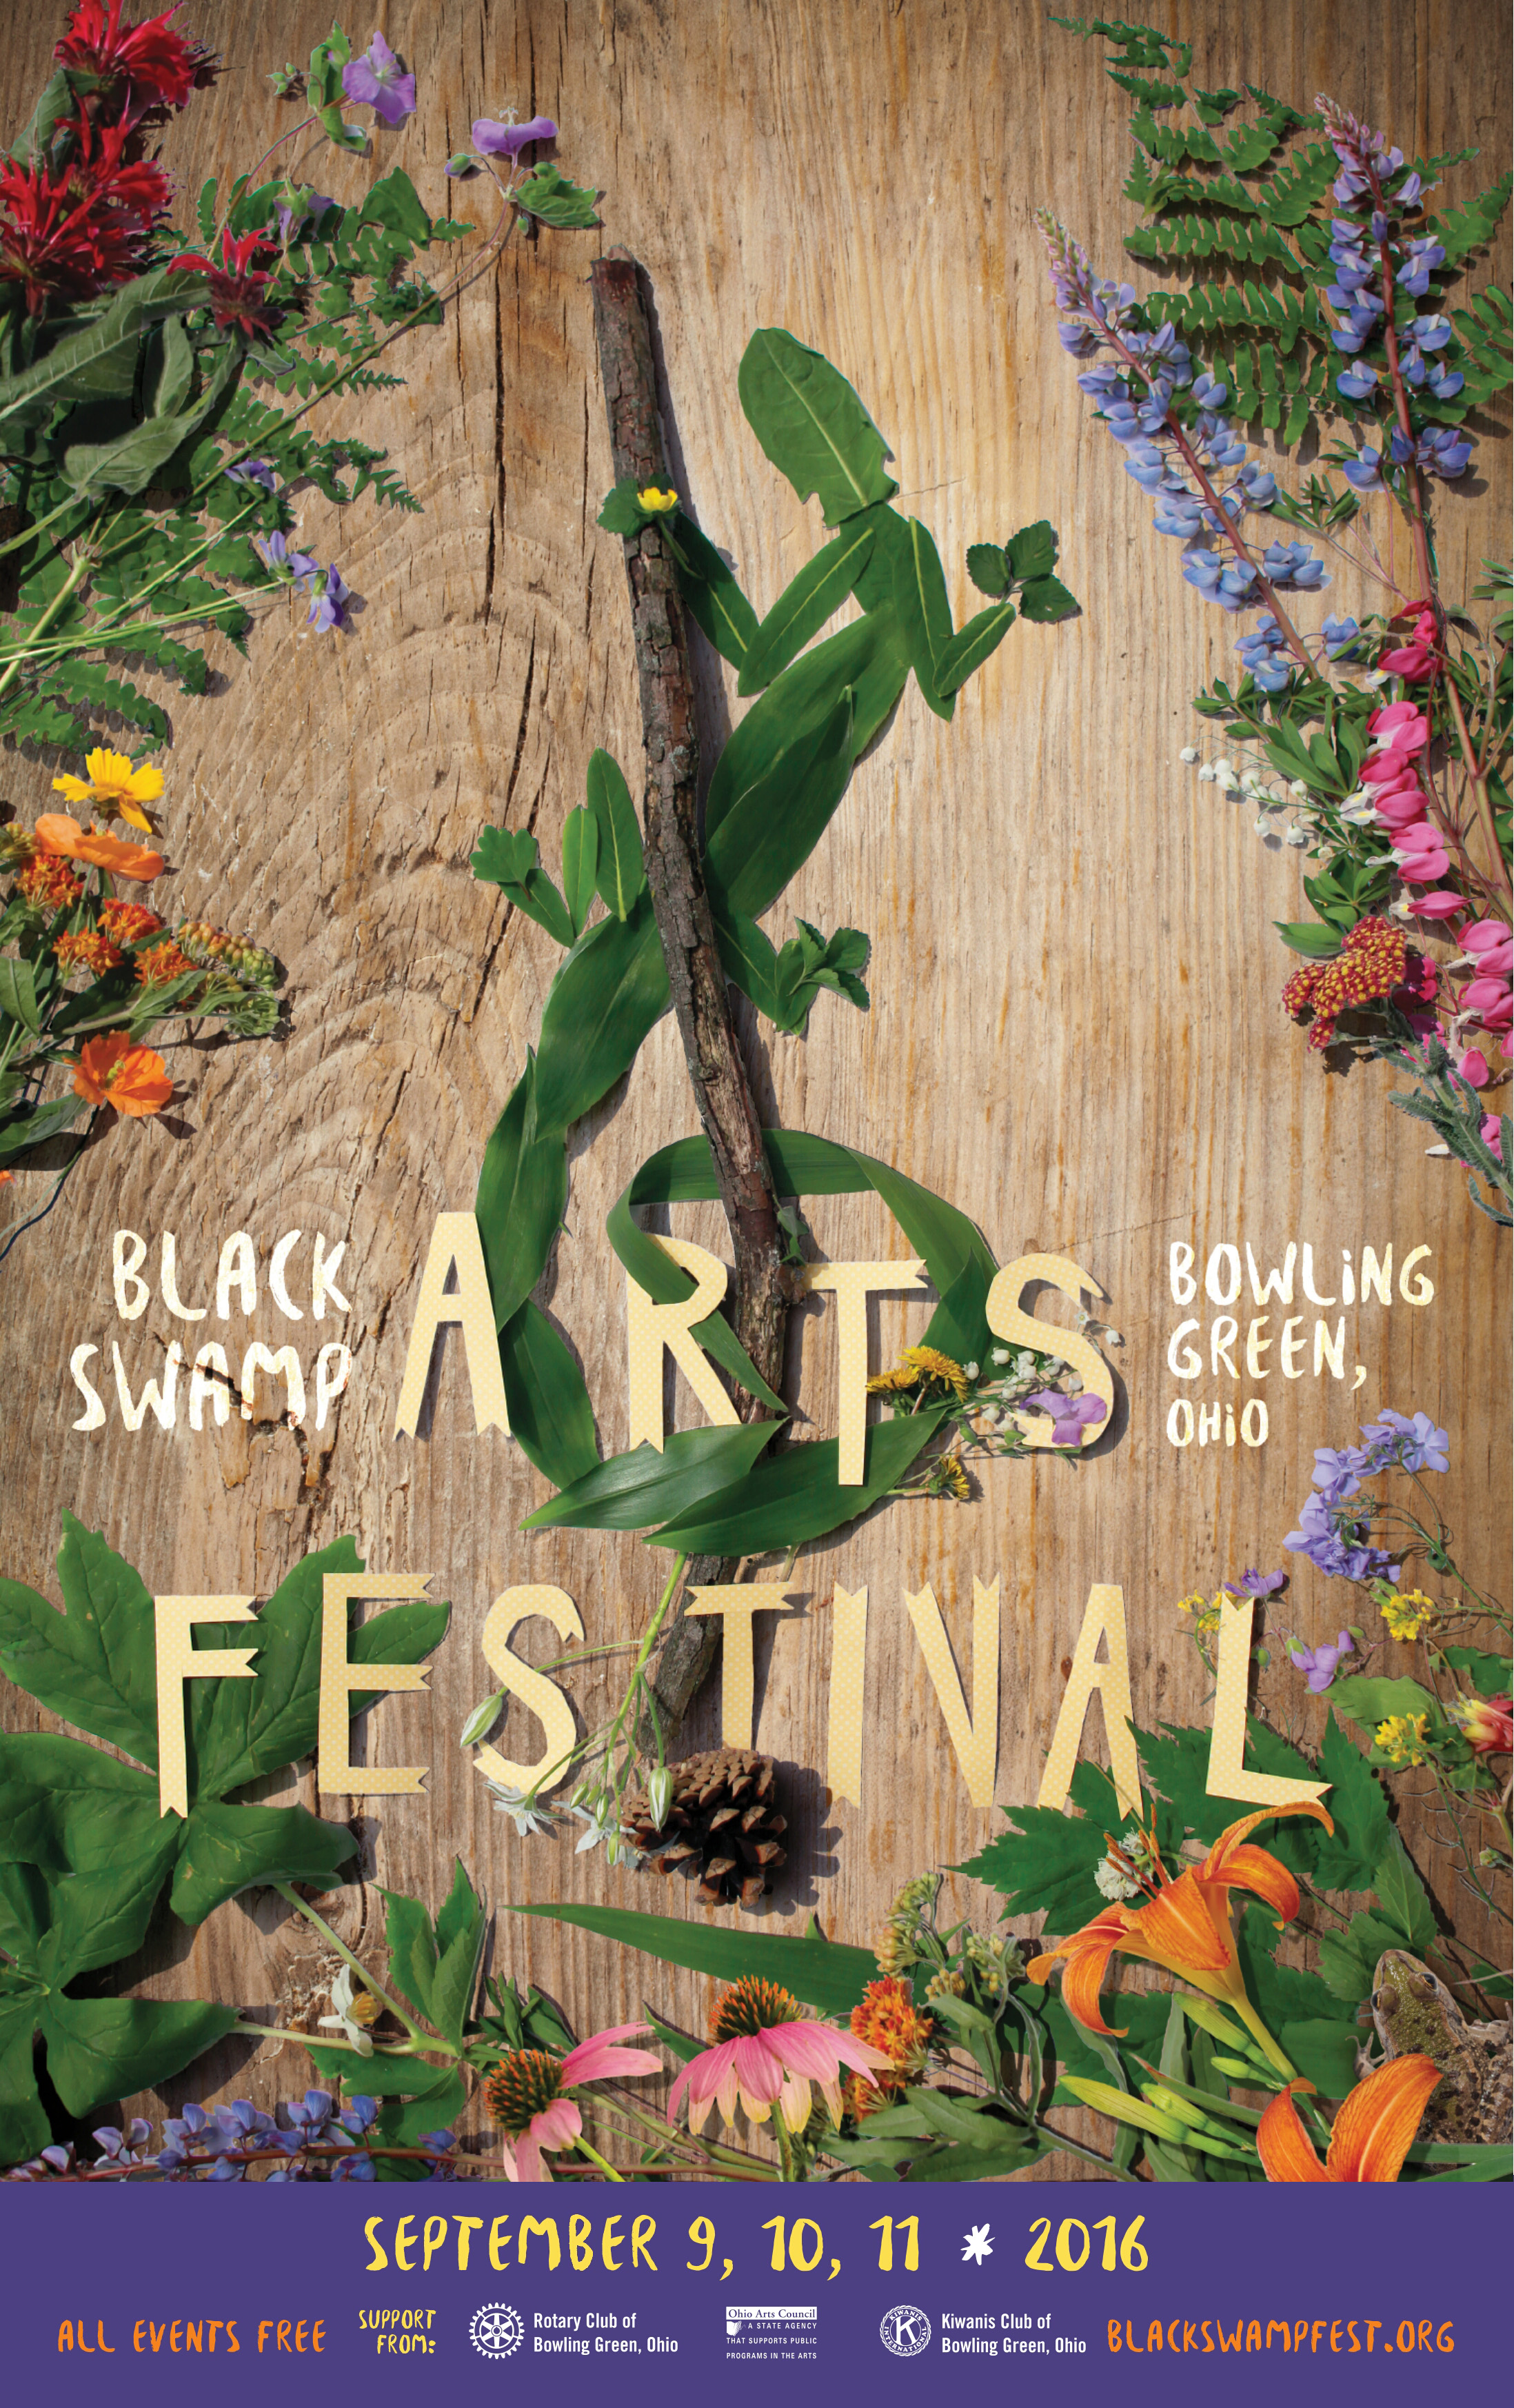 Black Swamp Arts Festival poster is a winner for creativity BG